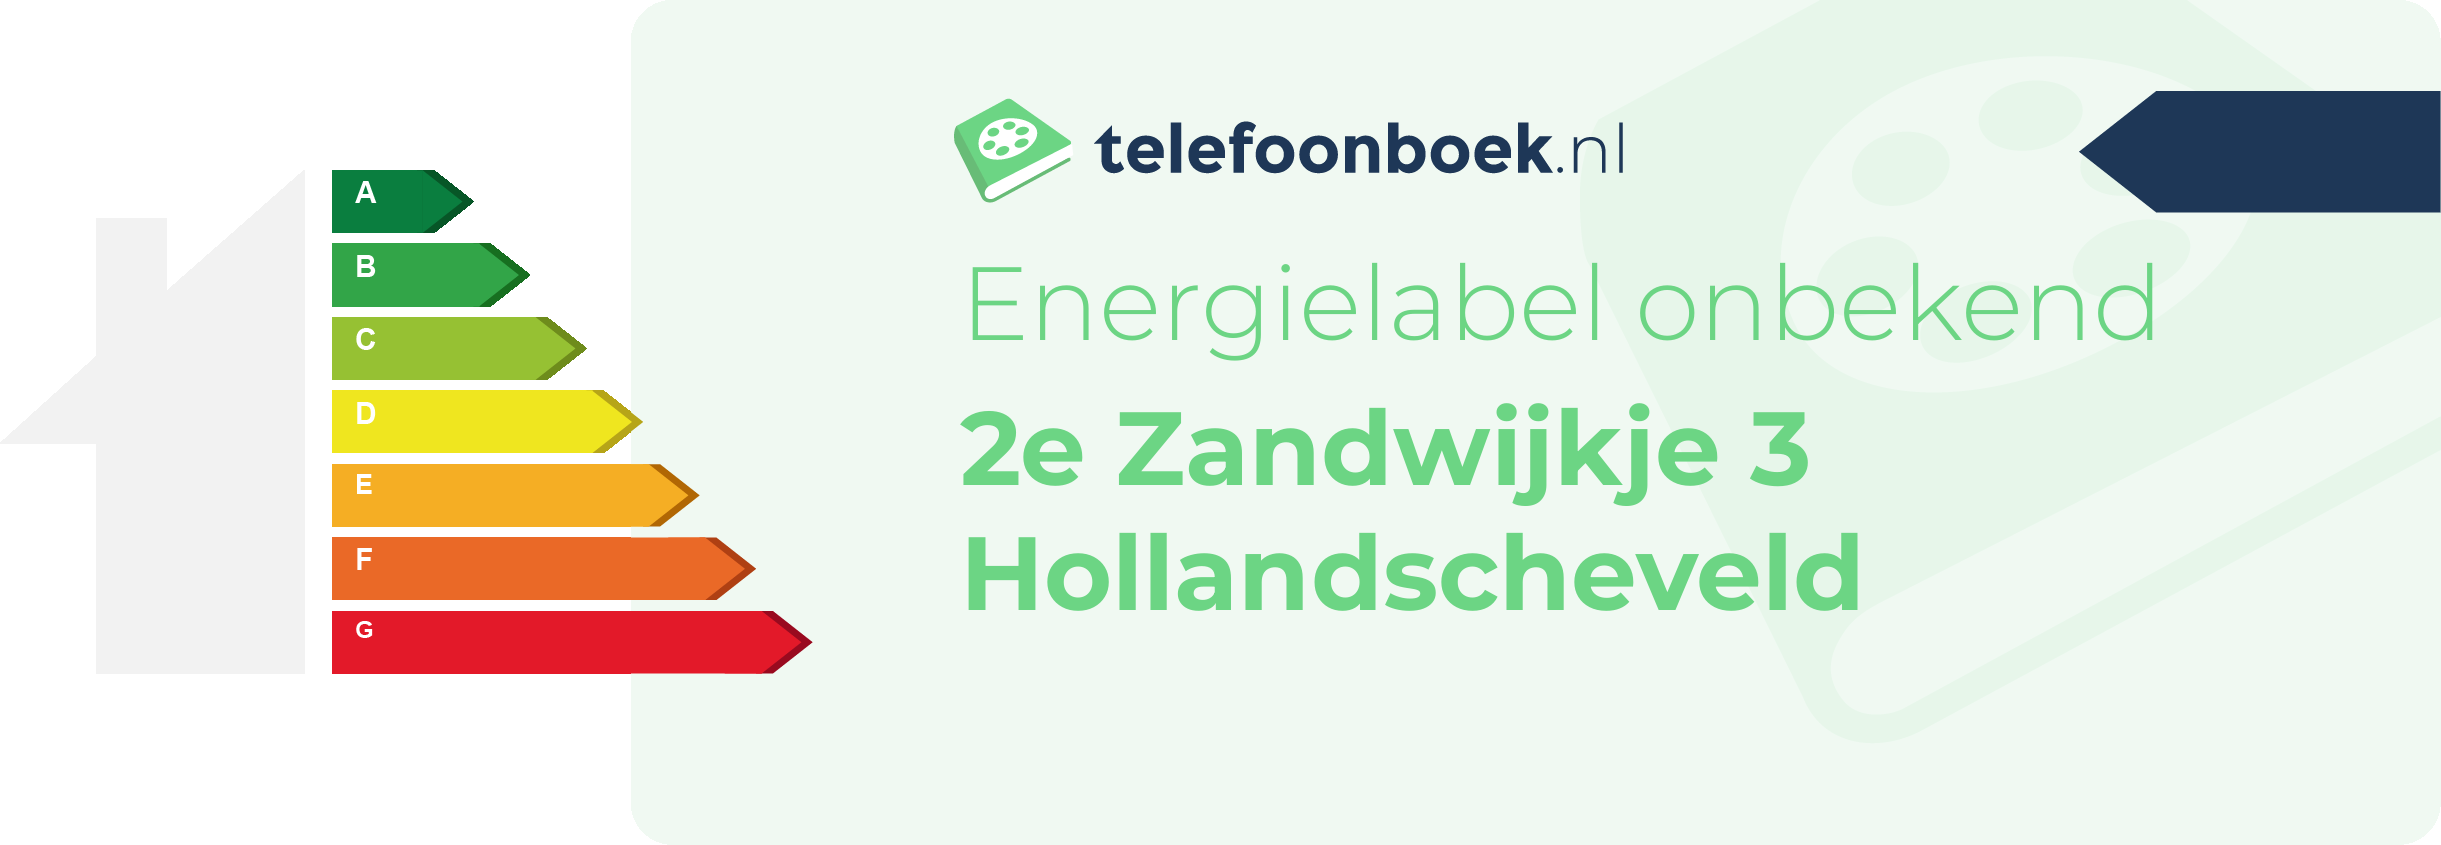 Energielabel 2e Zandwijkje 3 Hollandscheveld